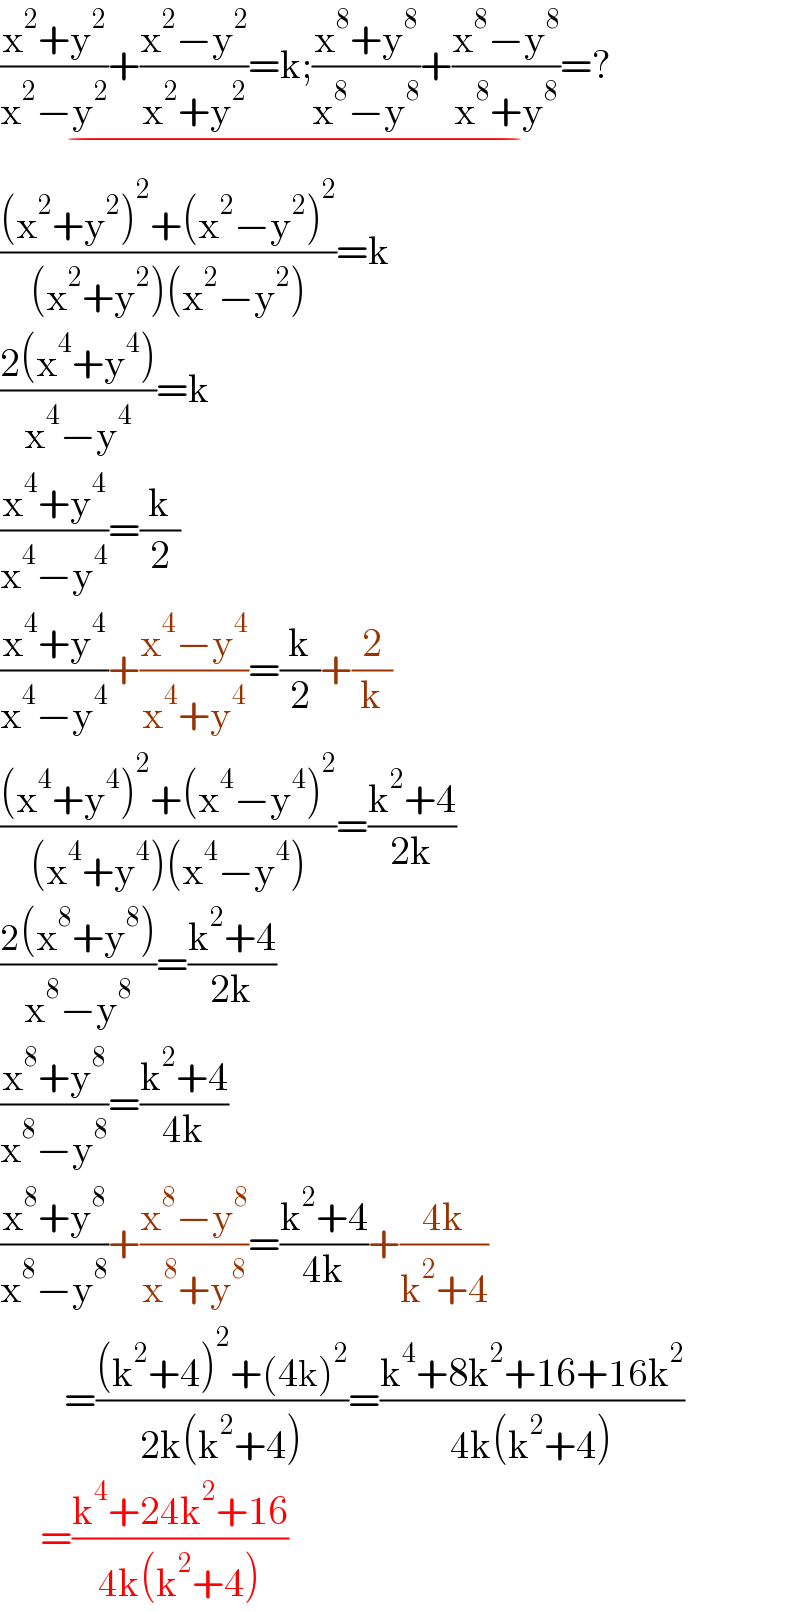 ((x^2 +y^2 )/(x^2 −y^2 ))+((x^2 −y^2 )/(x^2 +y^2 ))=k;((x^8 +y^8 )/(x^8 −y^8 ))+((x^8 −y^8 )/(x^8 +y^8 ))=?_(−)   (((x^2 +y^2 )^2 +(x^2 −y^2 )^2 )/((x^2 +y^2 )(x^2 −y^2 )))=k  ((2(x^4 +y^4 ))/(x^4 −y^4 ))=k  ((x^4 +y^4 )/(x^4 −y^4 ))=(k/2)  ((x^4 +y^4 )/(x^4 −y^4 ))+((x^4 −y^4 )/(x^4 +y^4 ))=(k/2)+(2/k)  (((x^4 +y^4 )^2 +(x^4 −y^4 )^2 )/((x^4 +y^4 )(x^4 −y^4 )))=((k^2 +4)/(2k))  ((2(x^8 +y^8 ))/(x^8 −y^8 ))=((k^2 +4)/(2k))  ((x^8 +y^8 )/(x^8 −y^8 ))=((k^2 +4)/(4k))  ((x^8 +y^8 )/(x^8 −y^8 ))+((x^8 −y^8 )/(x^8 +y^8 ))=((k^2 +4)/(4k))+((4k)/(k^2 +4))          =(((k^2 +4)^2 +(4k)^2 )/(2k(k^2 +4)))=((k^4 +8k^2 +16+16k^2 )/(4k(k^2 +4)))       =((k^4 +24k^2 +16)/(4k(k^2 +4)))  